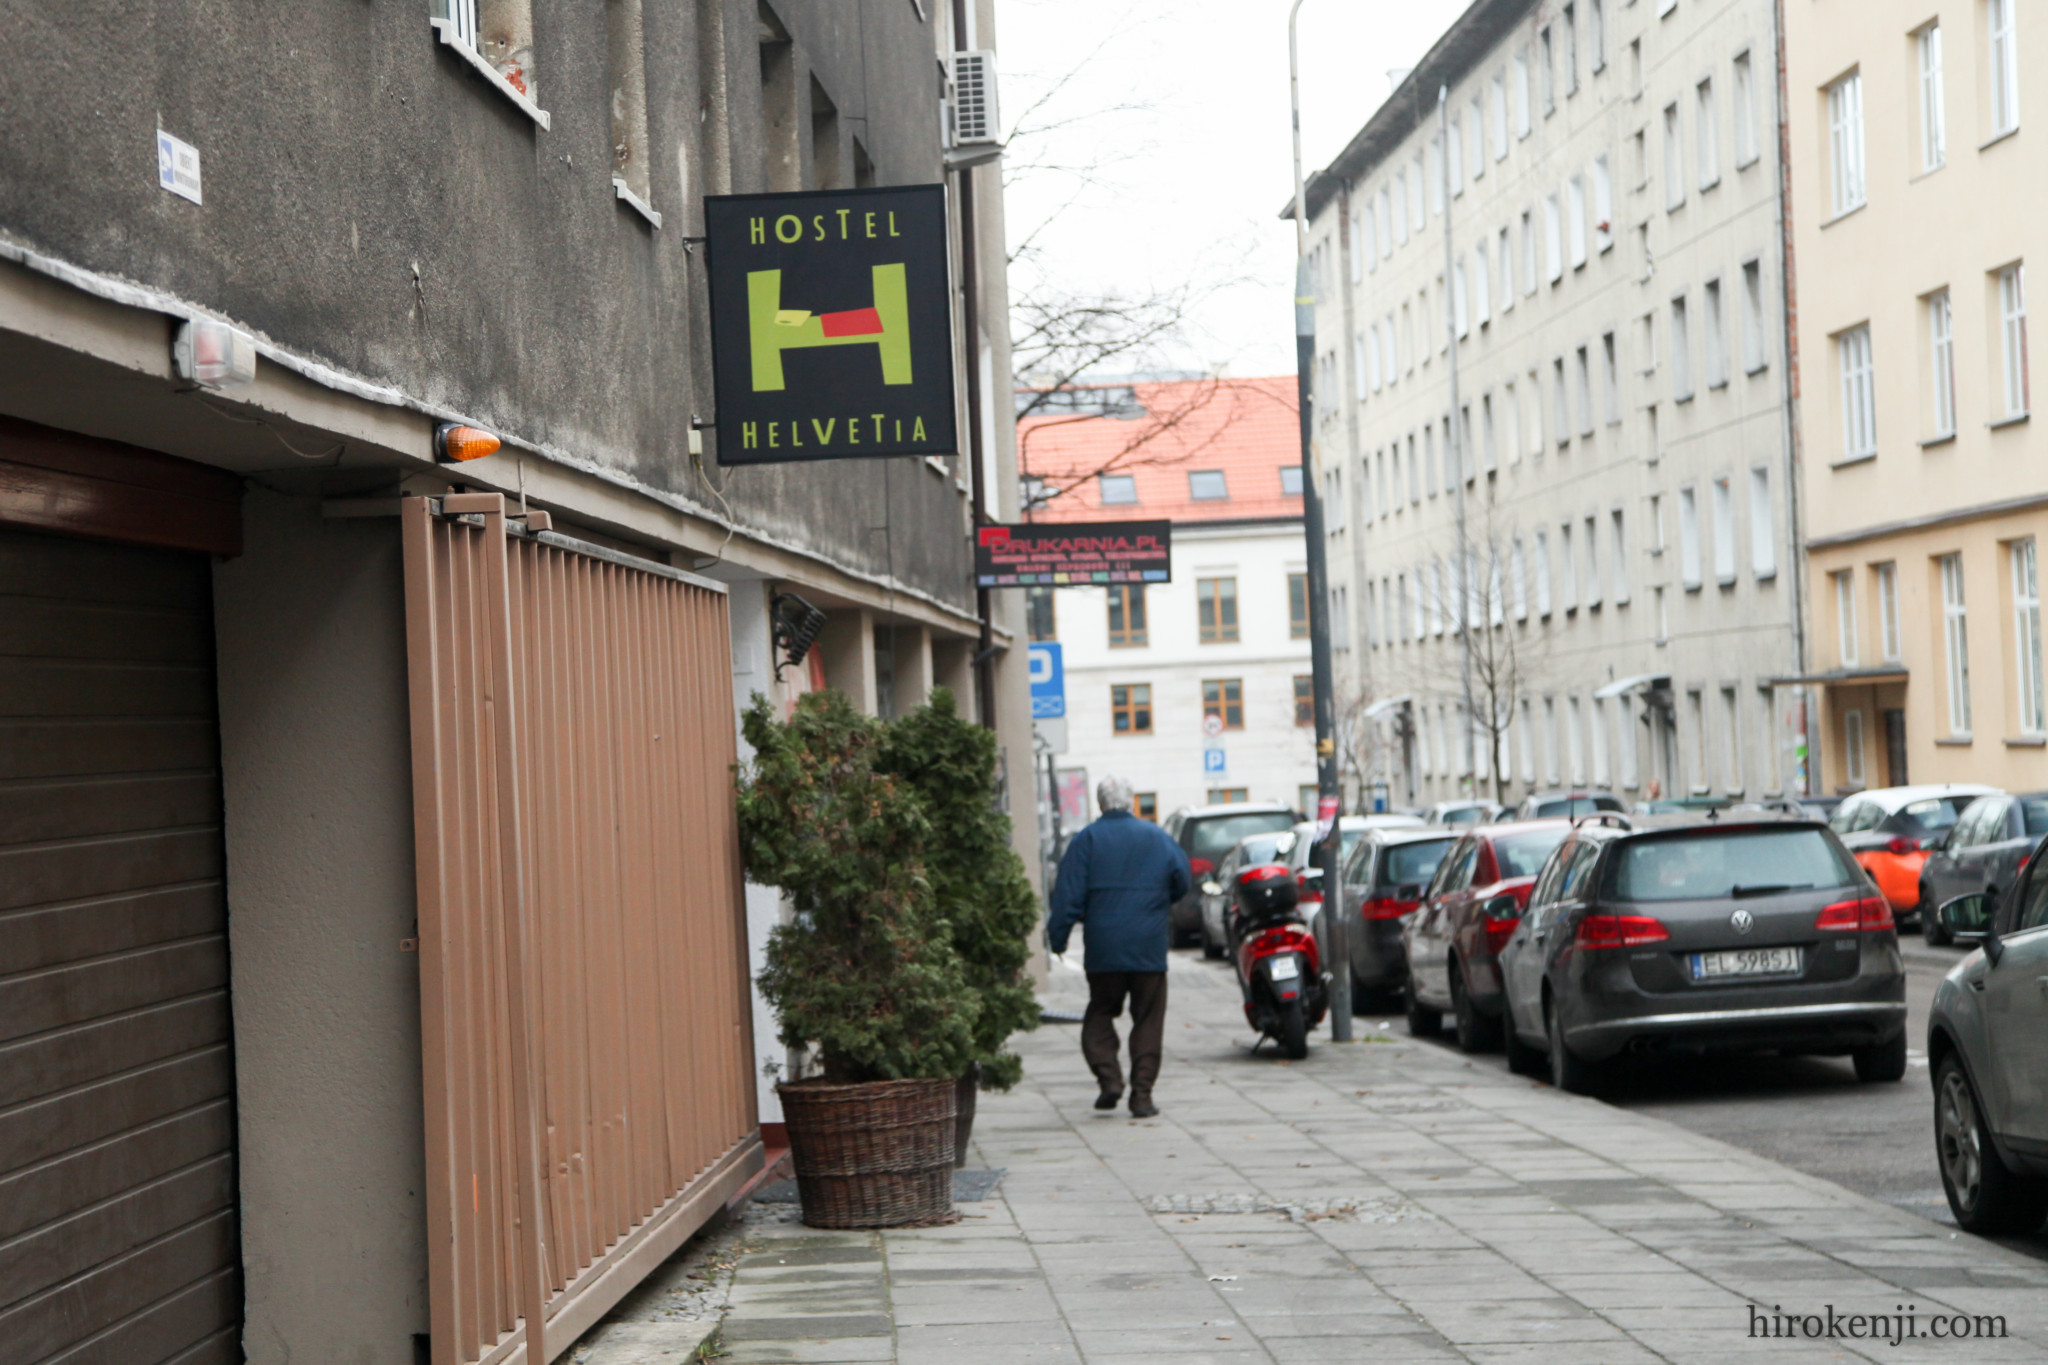 Hostel Helvetia